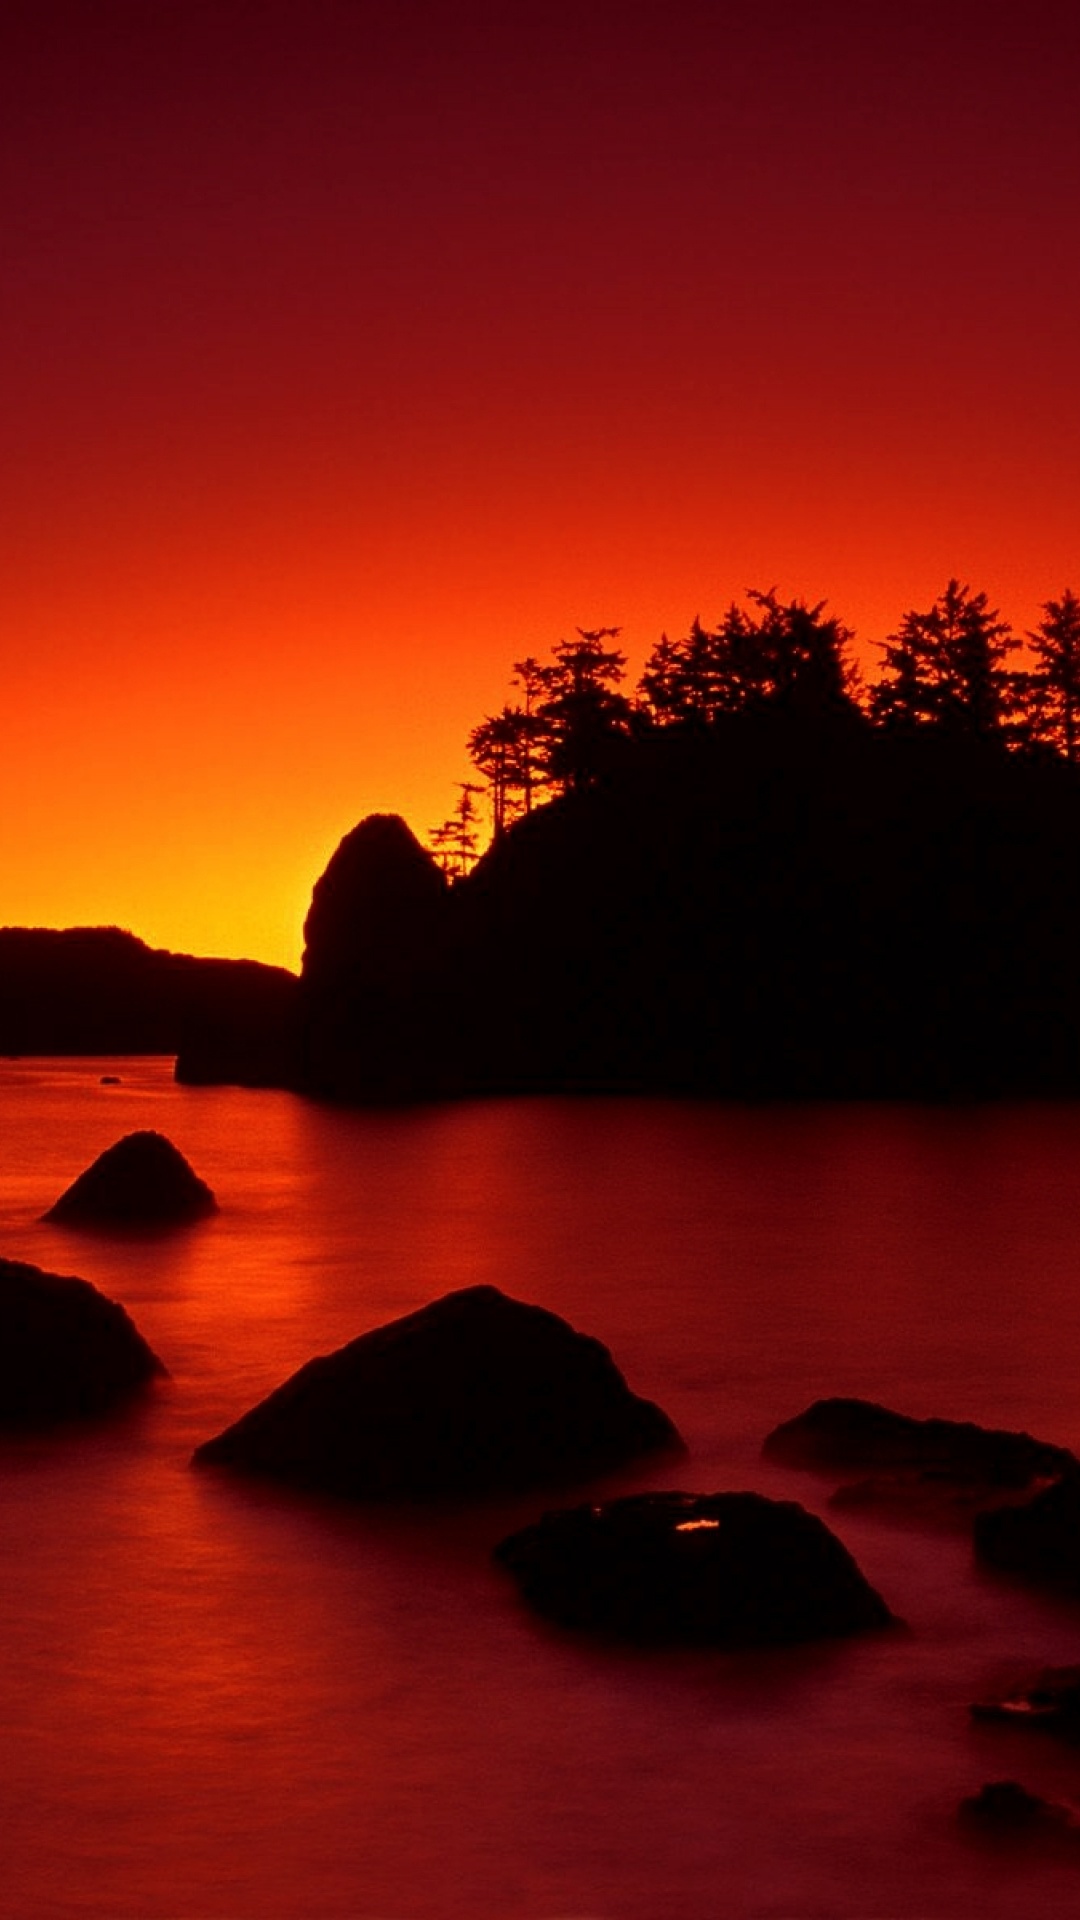 최고의 빨간 배경 화면,하늘,자연 경관,자연,빨간,아침에 붉은 하늘